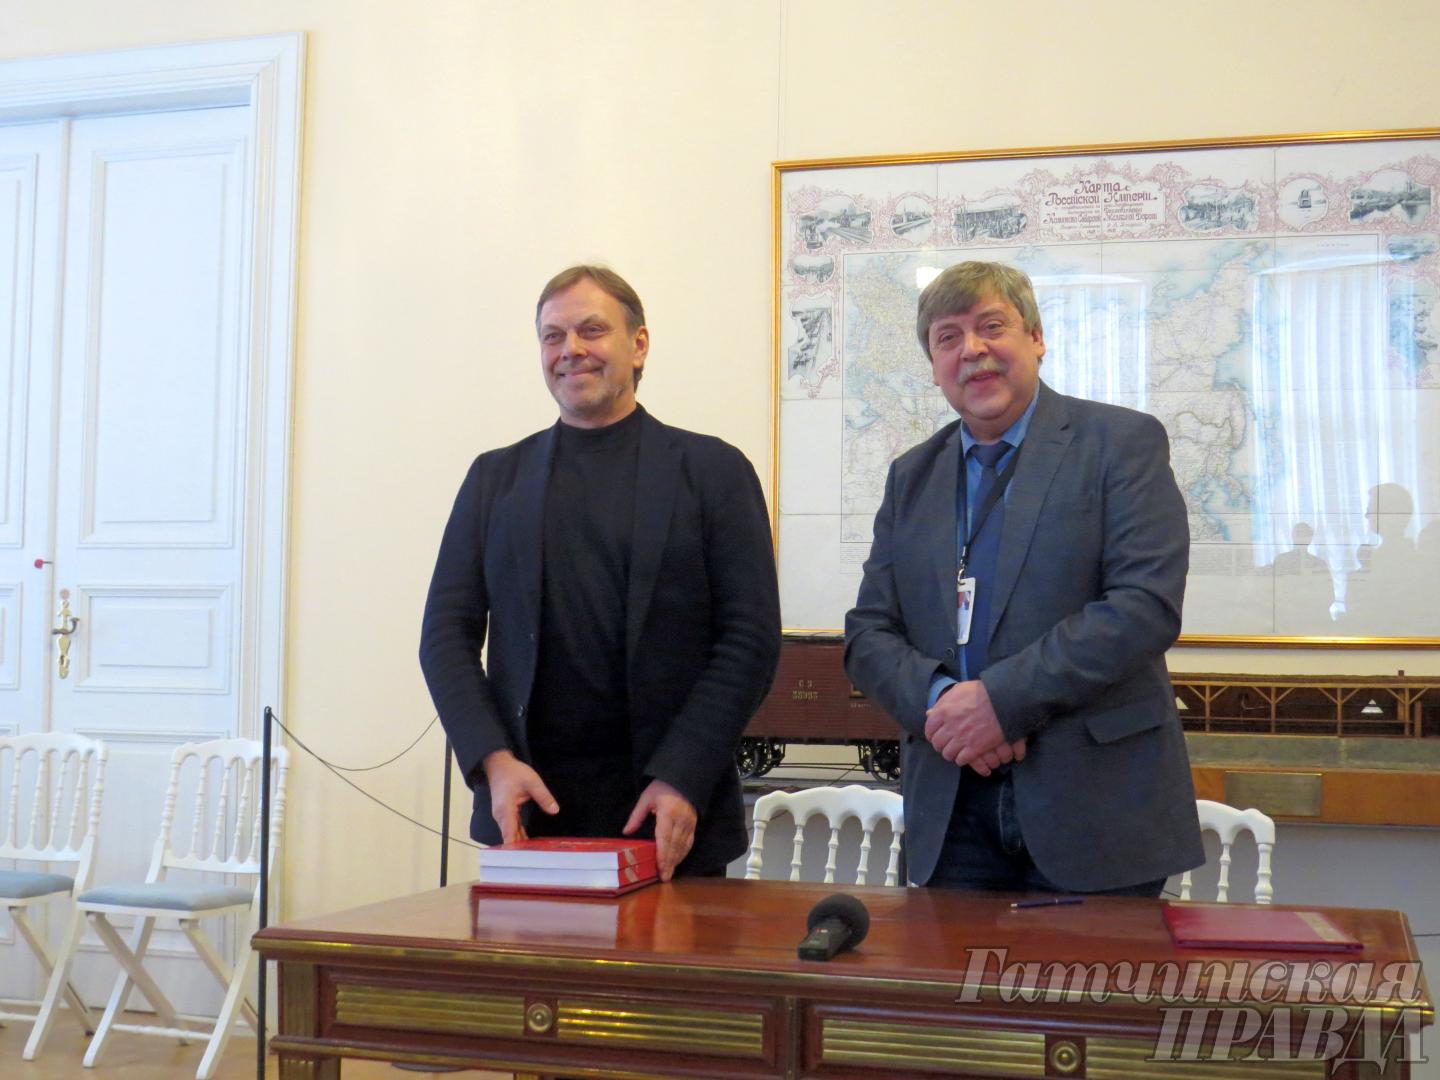 Гатчинский дворец и Кунсткамера подписали соглашение о сотрудничестве